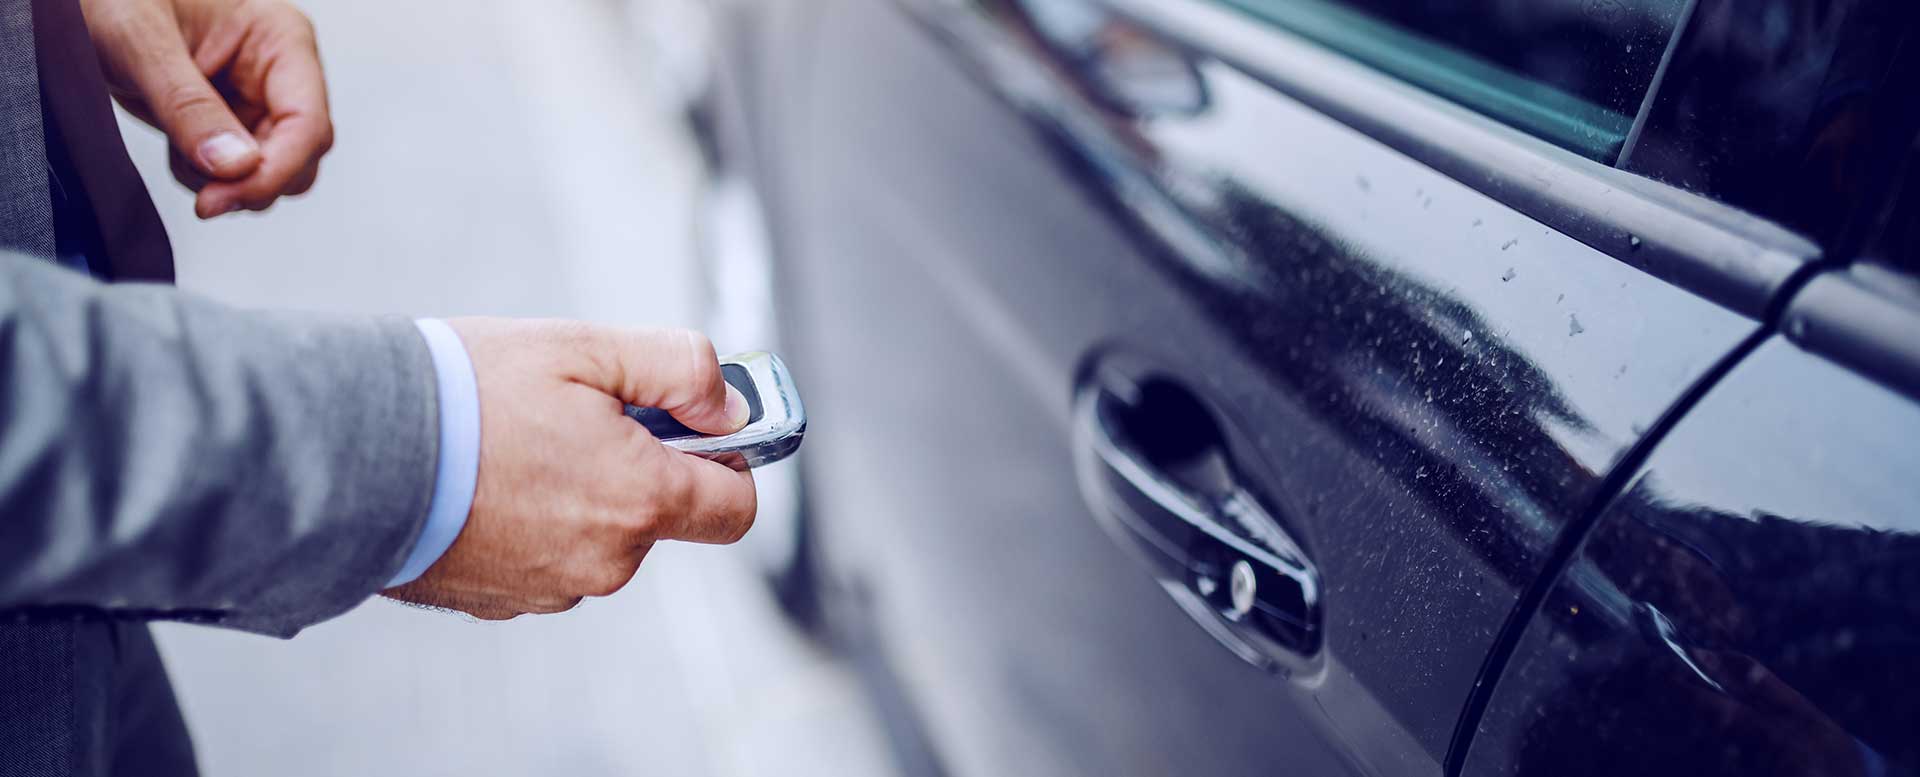 Diebstahlschutz: Auto gegen Diebe sichern